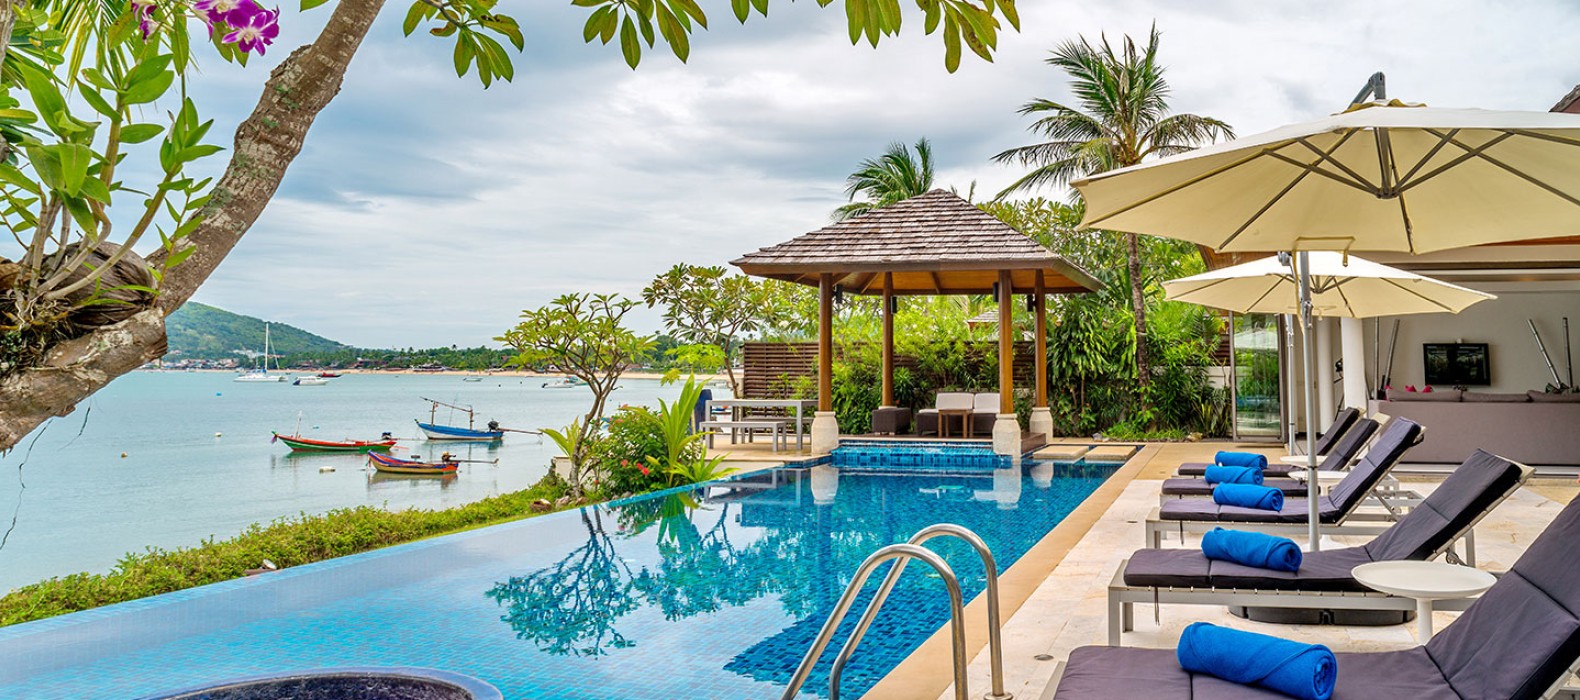 Exterior pool view of Villa Beautiful Life in Koh Samui